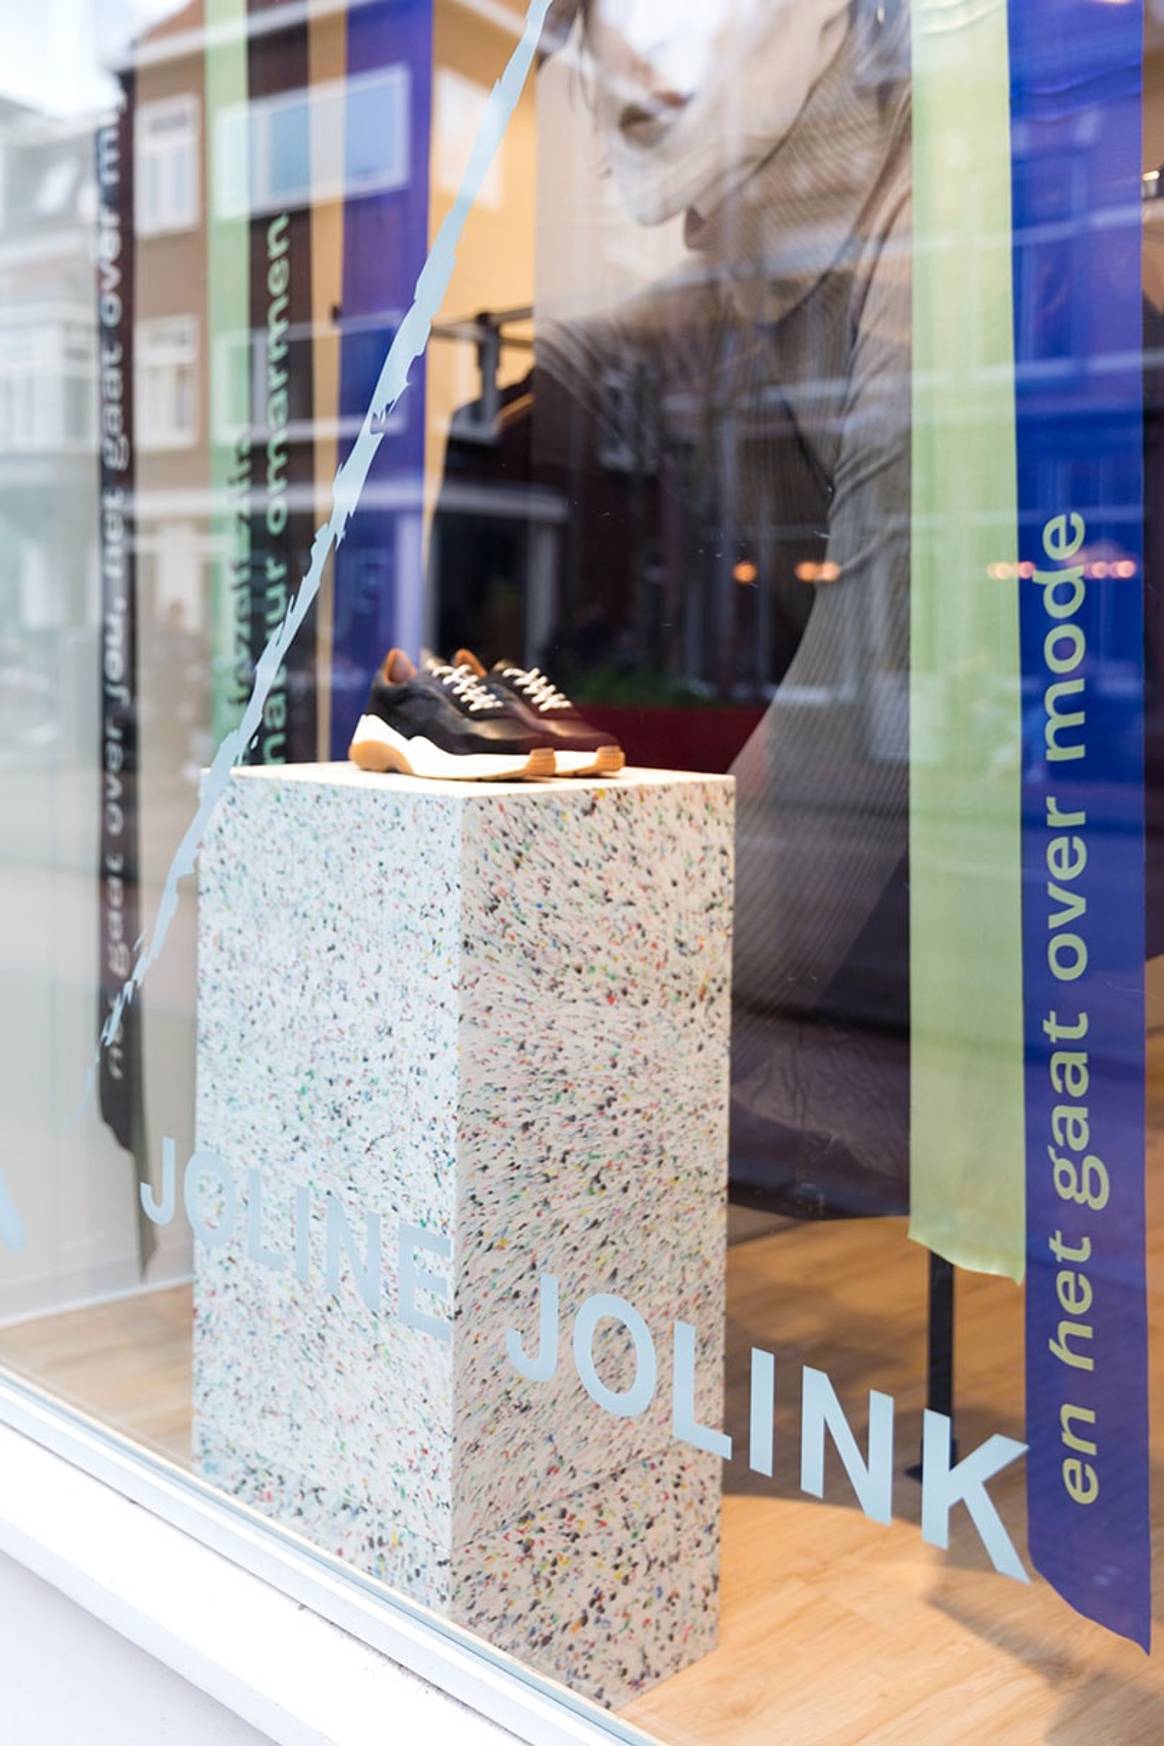 Binnenkijken: Joline Jolink opent winkel in Utrecht